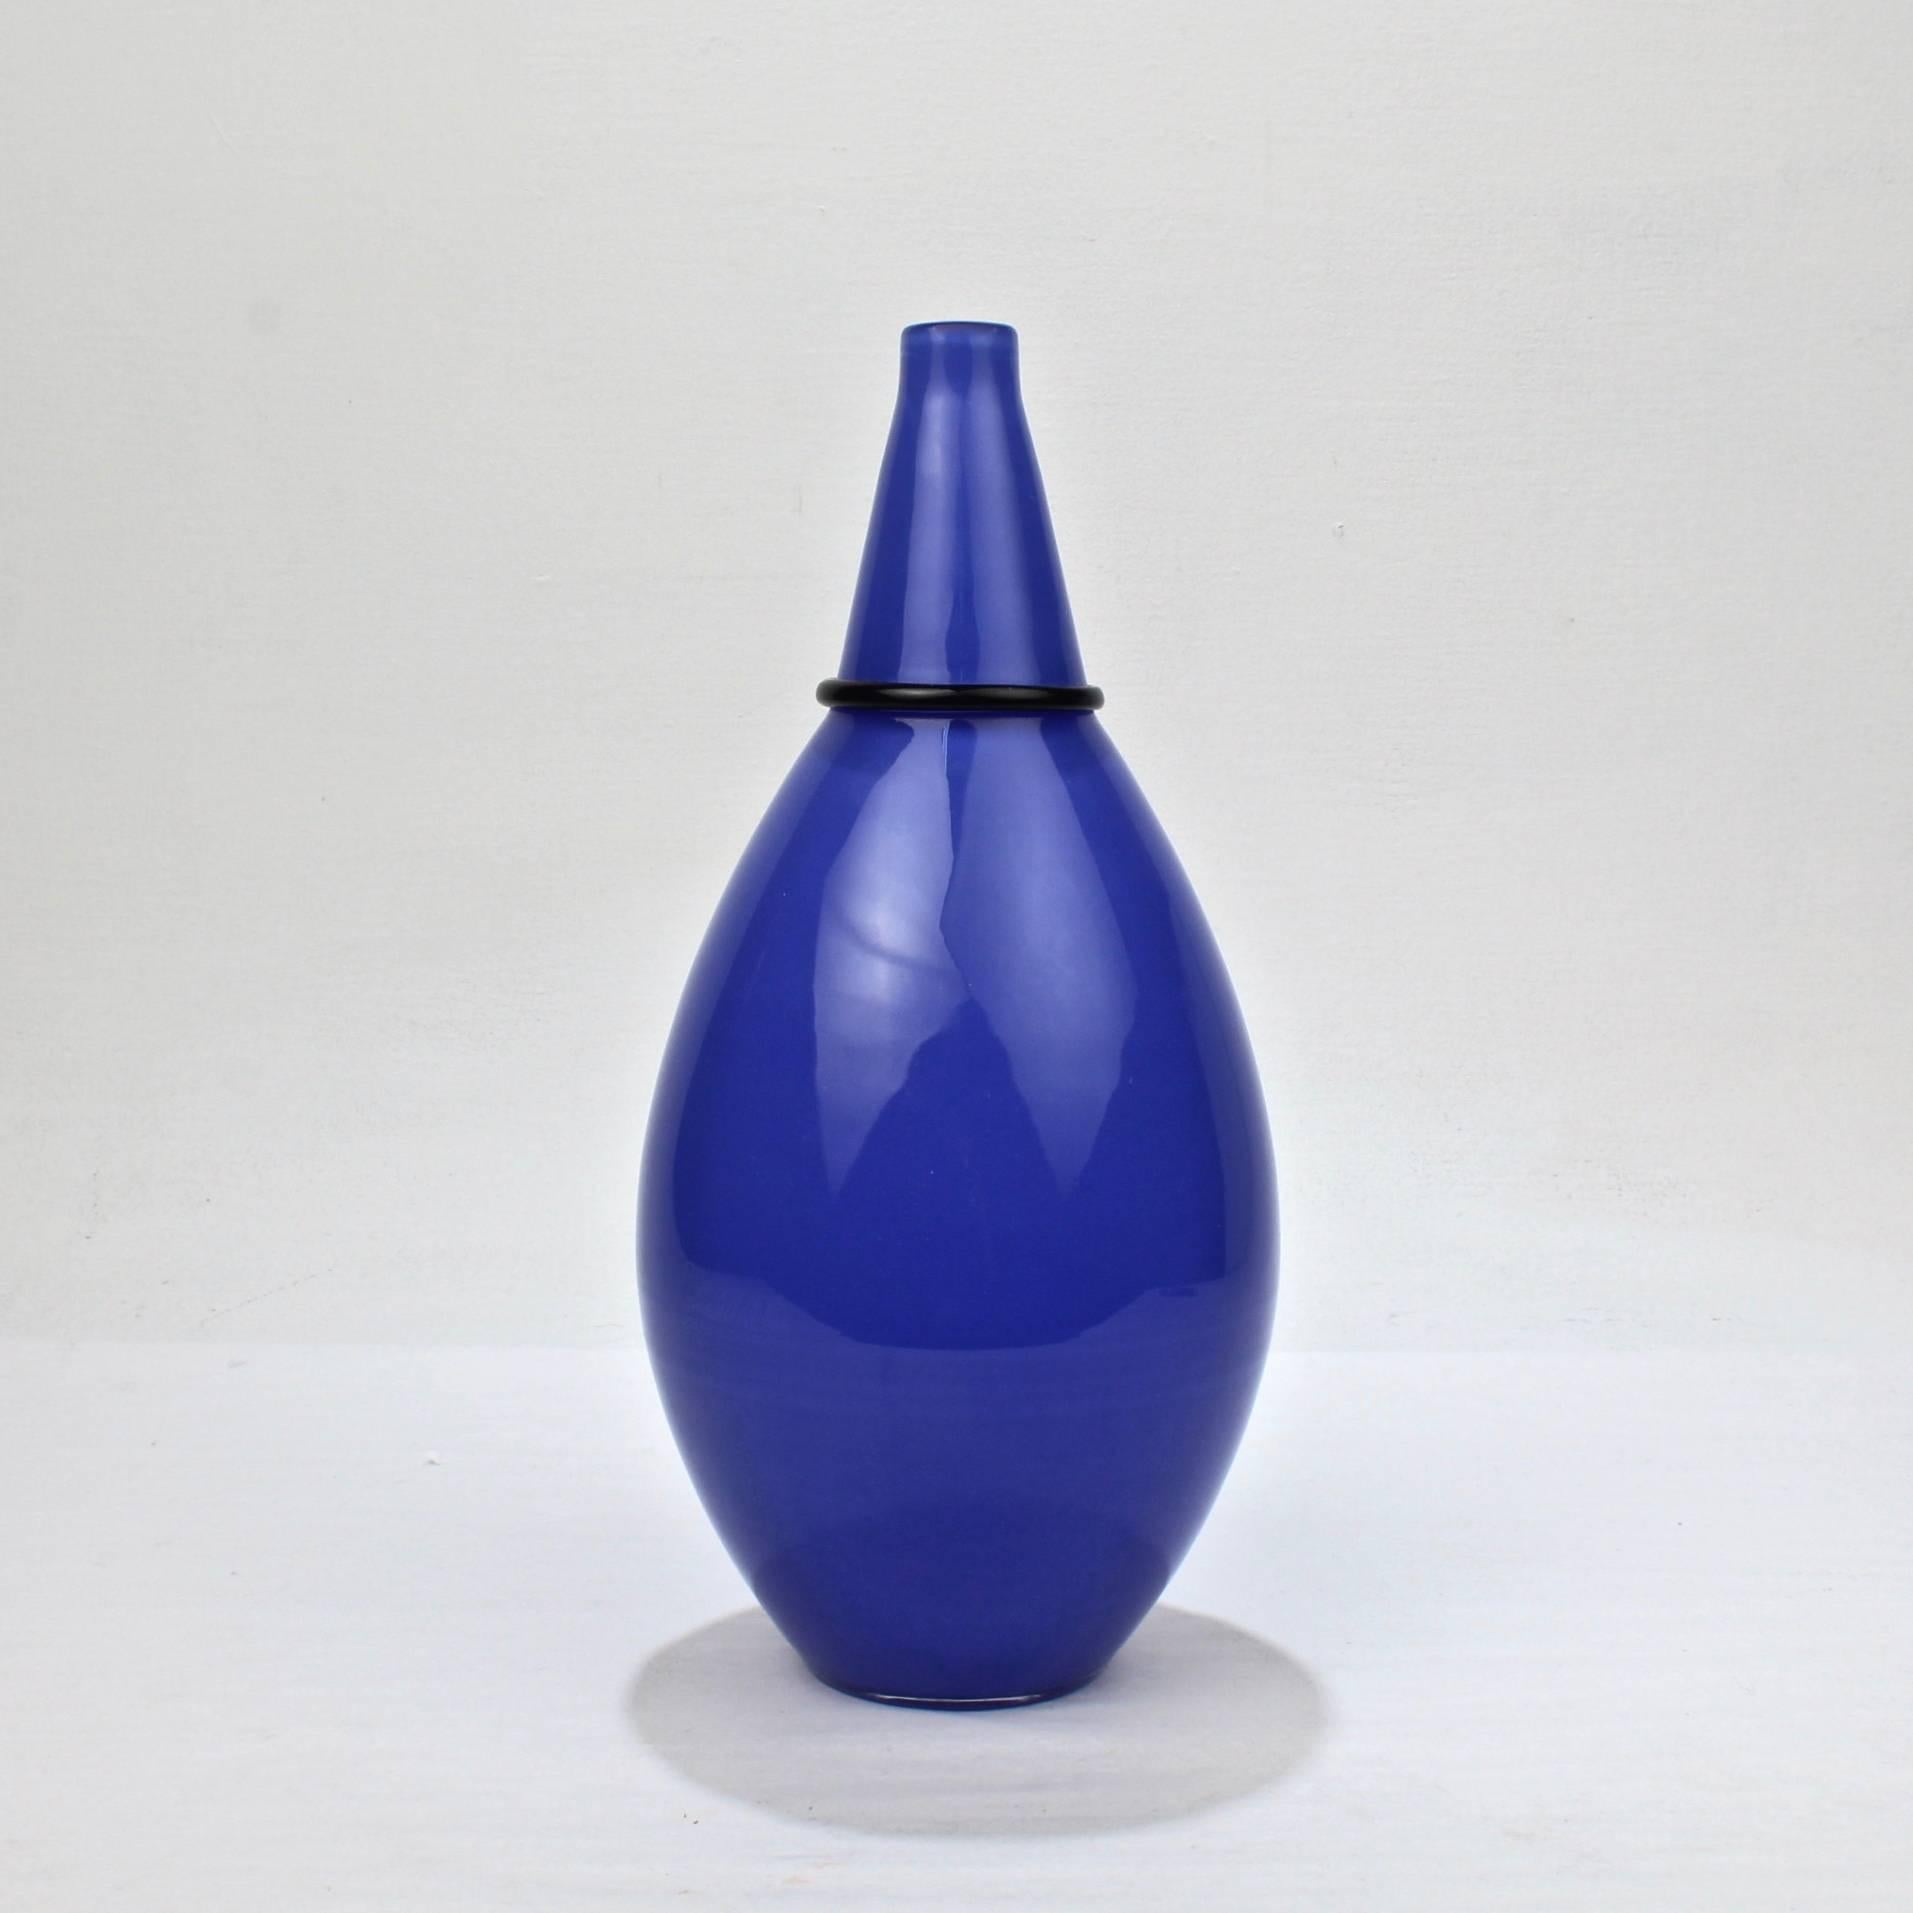 Un très bon vase en verre de Murano par Lino Tagliapietra et Marina Angelin avec Effetre International pour Oggetti. 

Vase de forme bouteille opaque, d'un bleu presque royal, avec une bande noire appliquée définissant le col. 

Un bel exemple